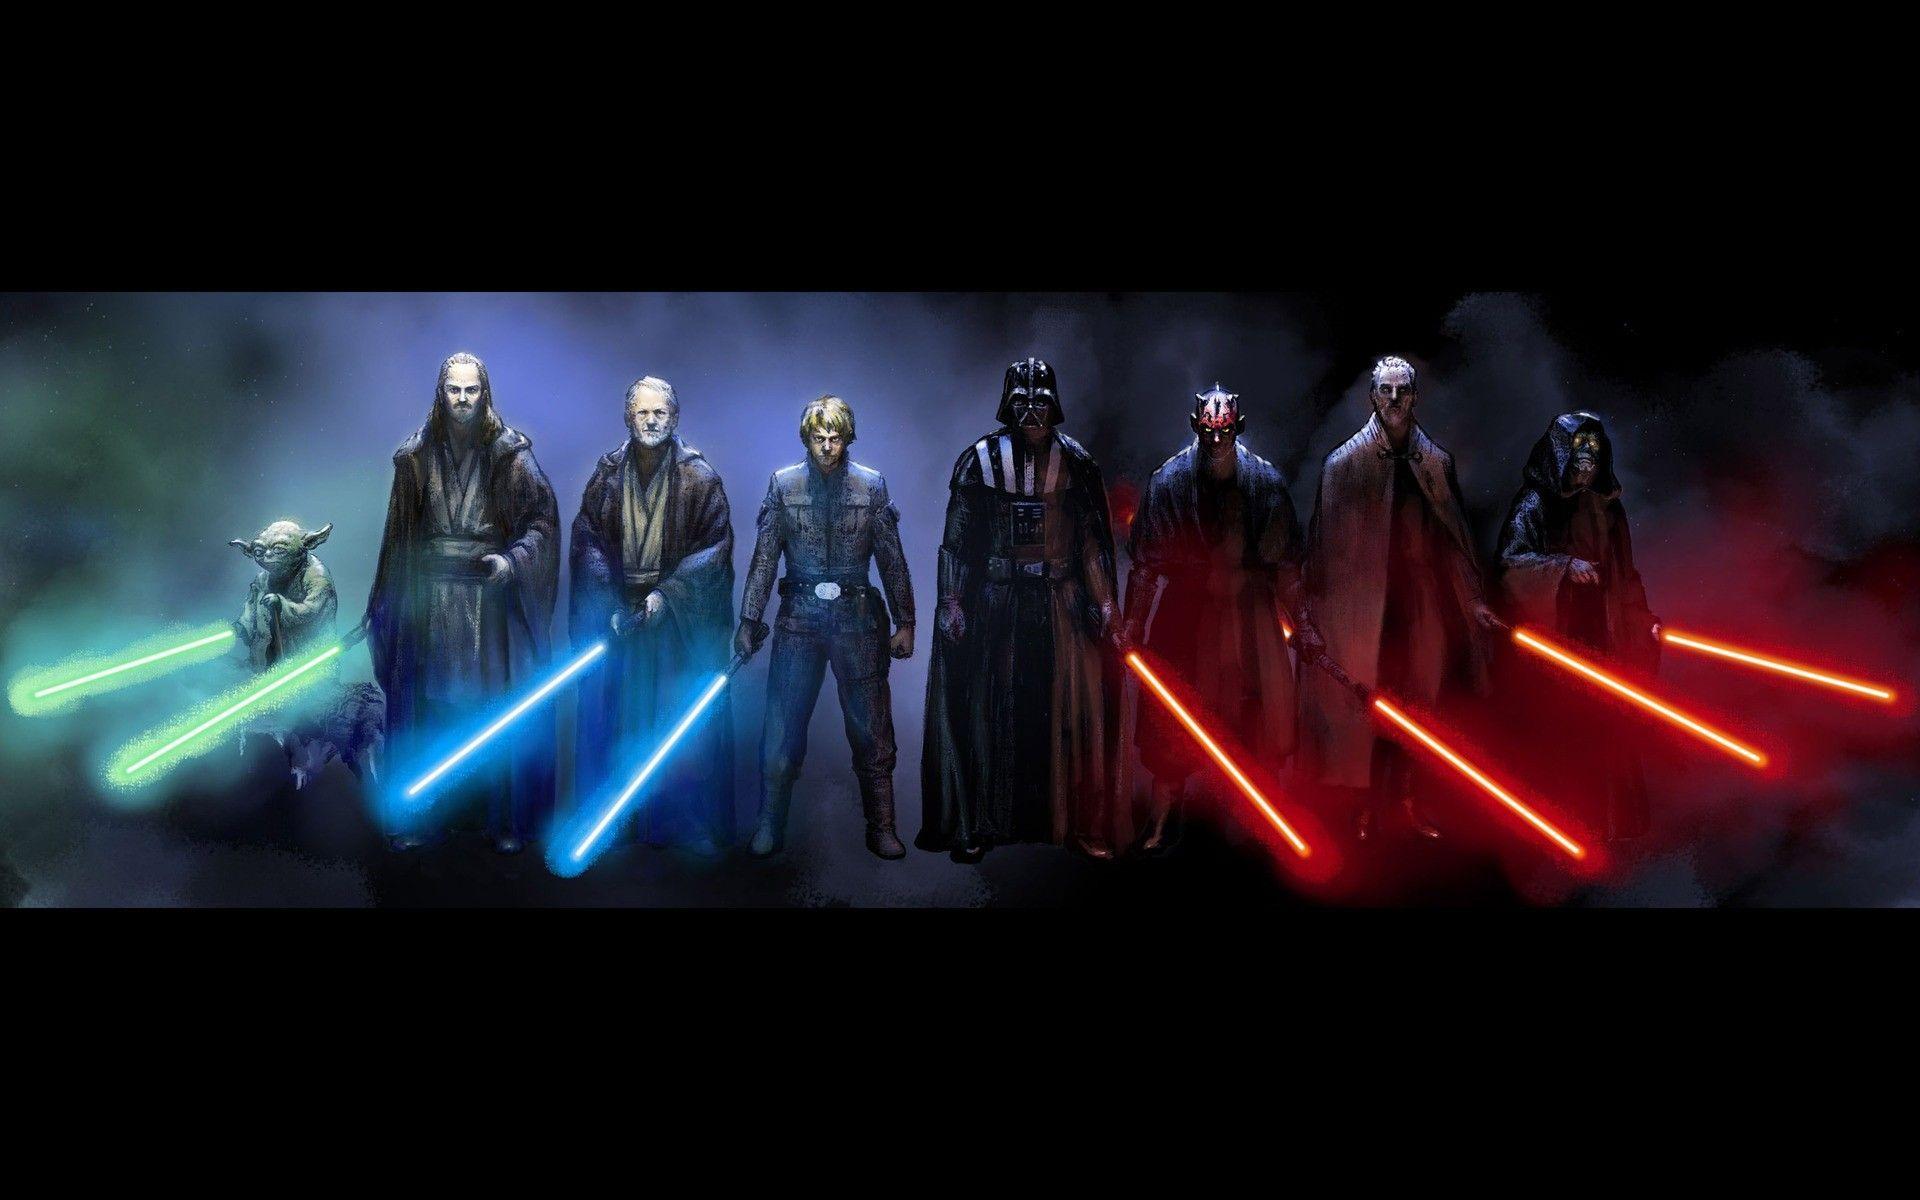 Yoda, #Obi Wan Kenobi, #Luke Skywalker, #Qui Gon Jinn, #Darth